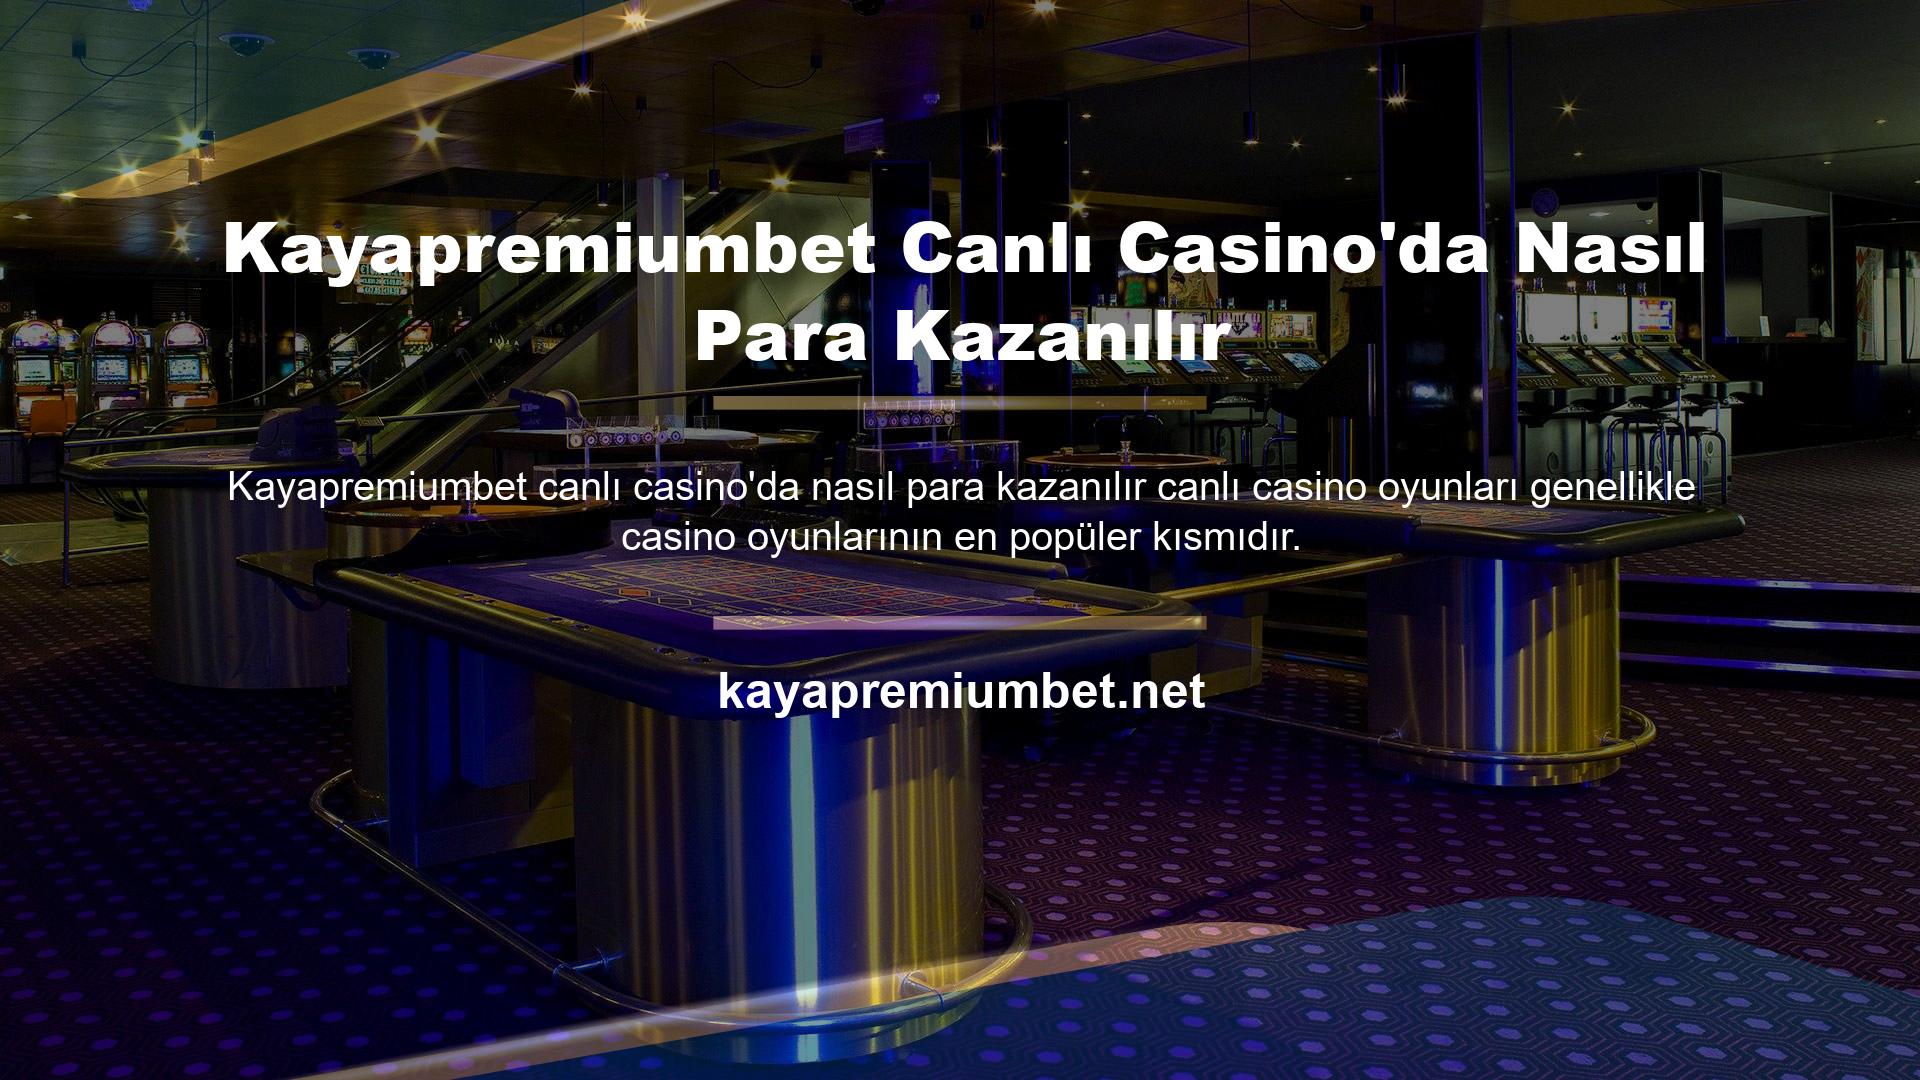 Aynı koşullar altında sitenin tüm temsilcileri Kayapremiumbet Canlı Casino'da para kazanma şansına sahiptir